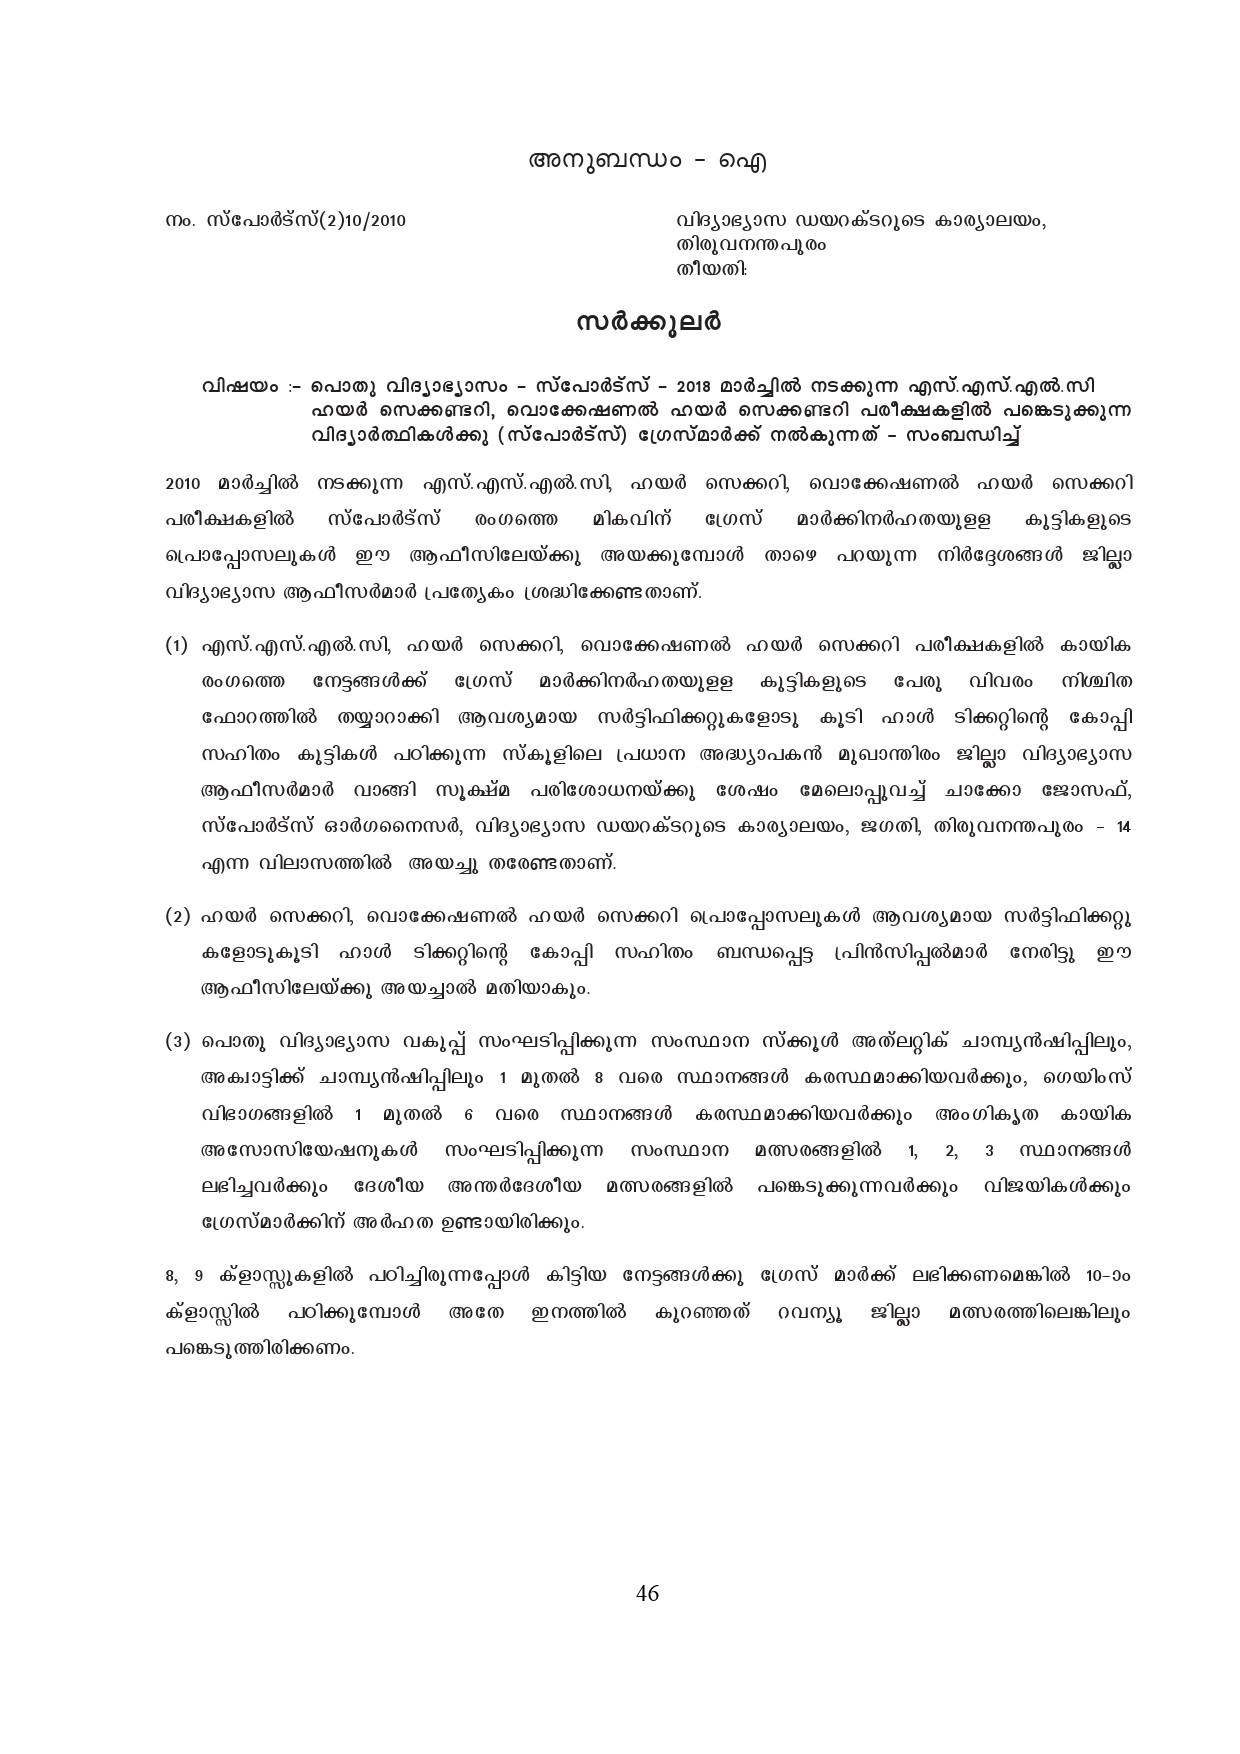 Kerala SSLC Exam Result 2019 - Notification Image 46